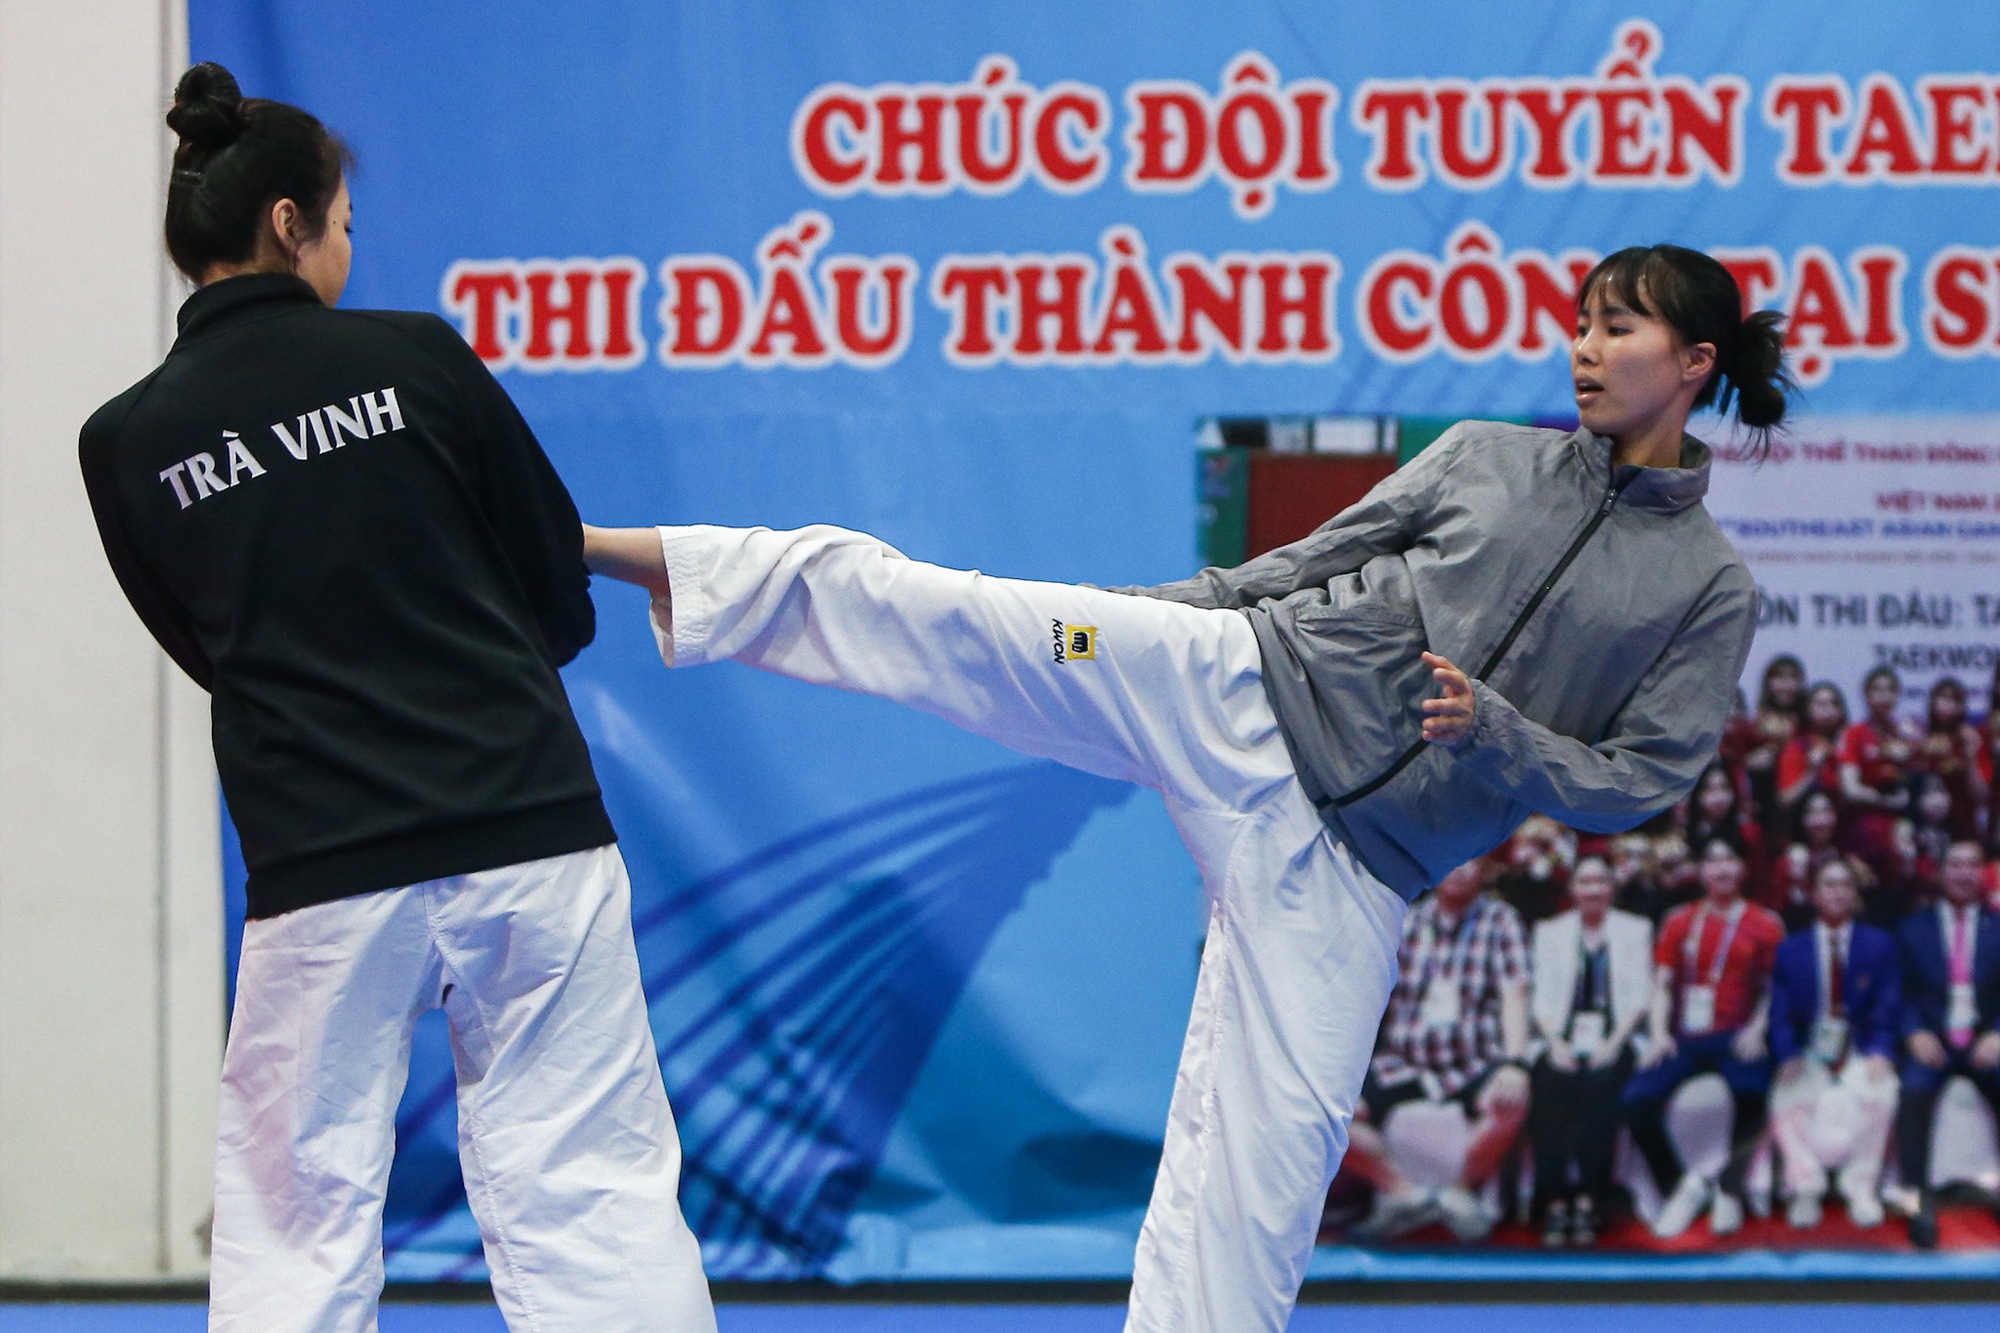 Tuyển Taekwondo Việt Nam: Chuẩn bị kĩ lưỡng cho thử thách khắc nghiệt tại vòng loại Olympic - Ảnh 2.